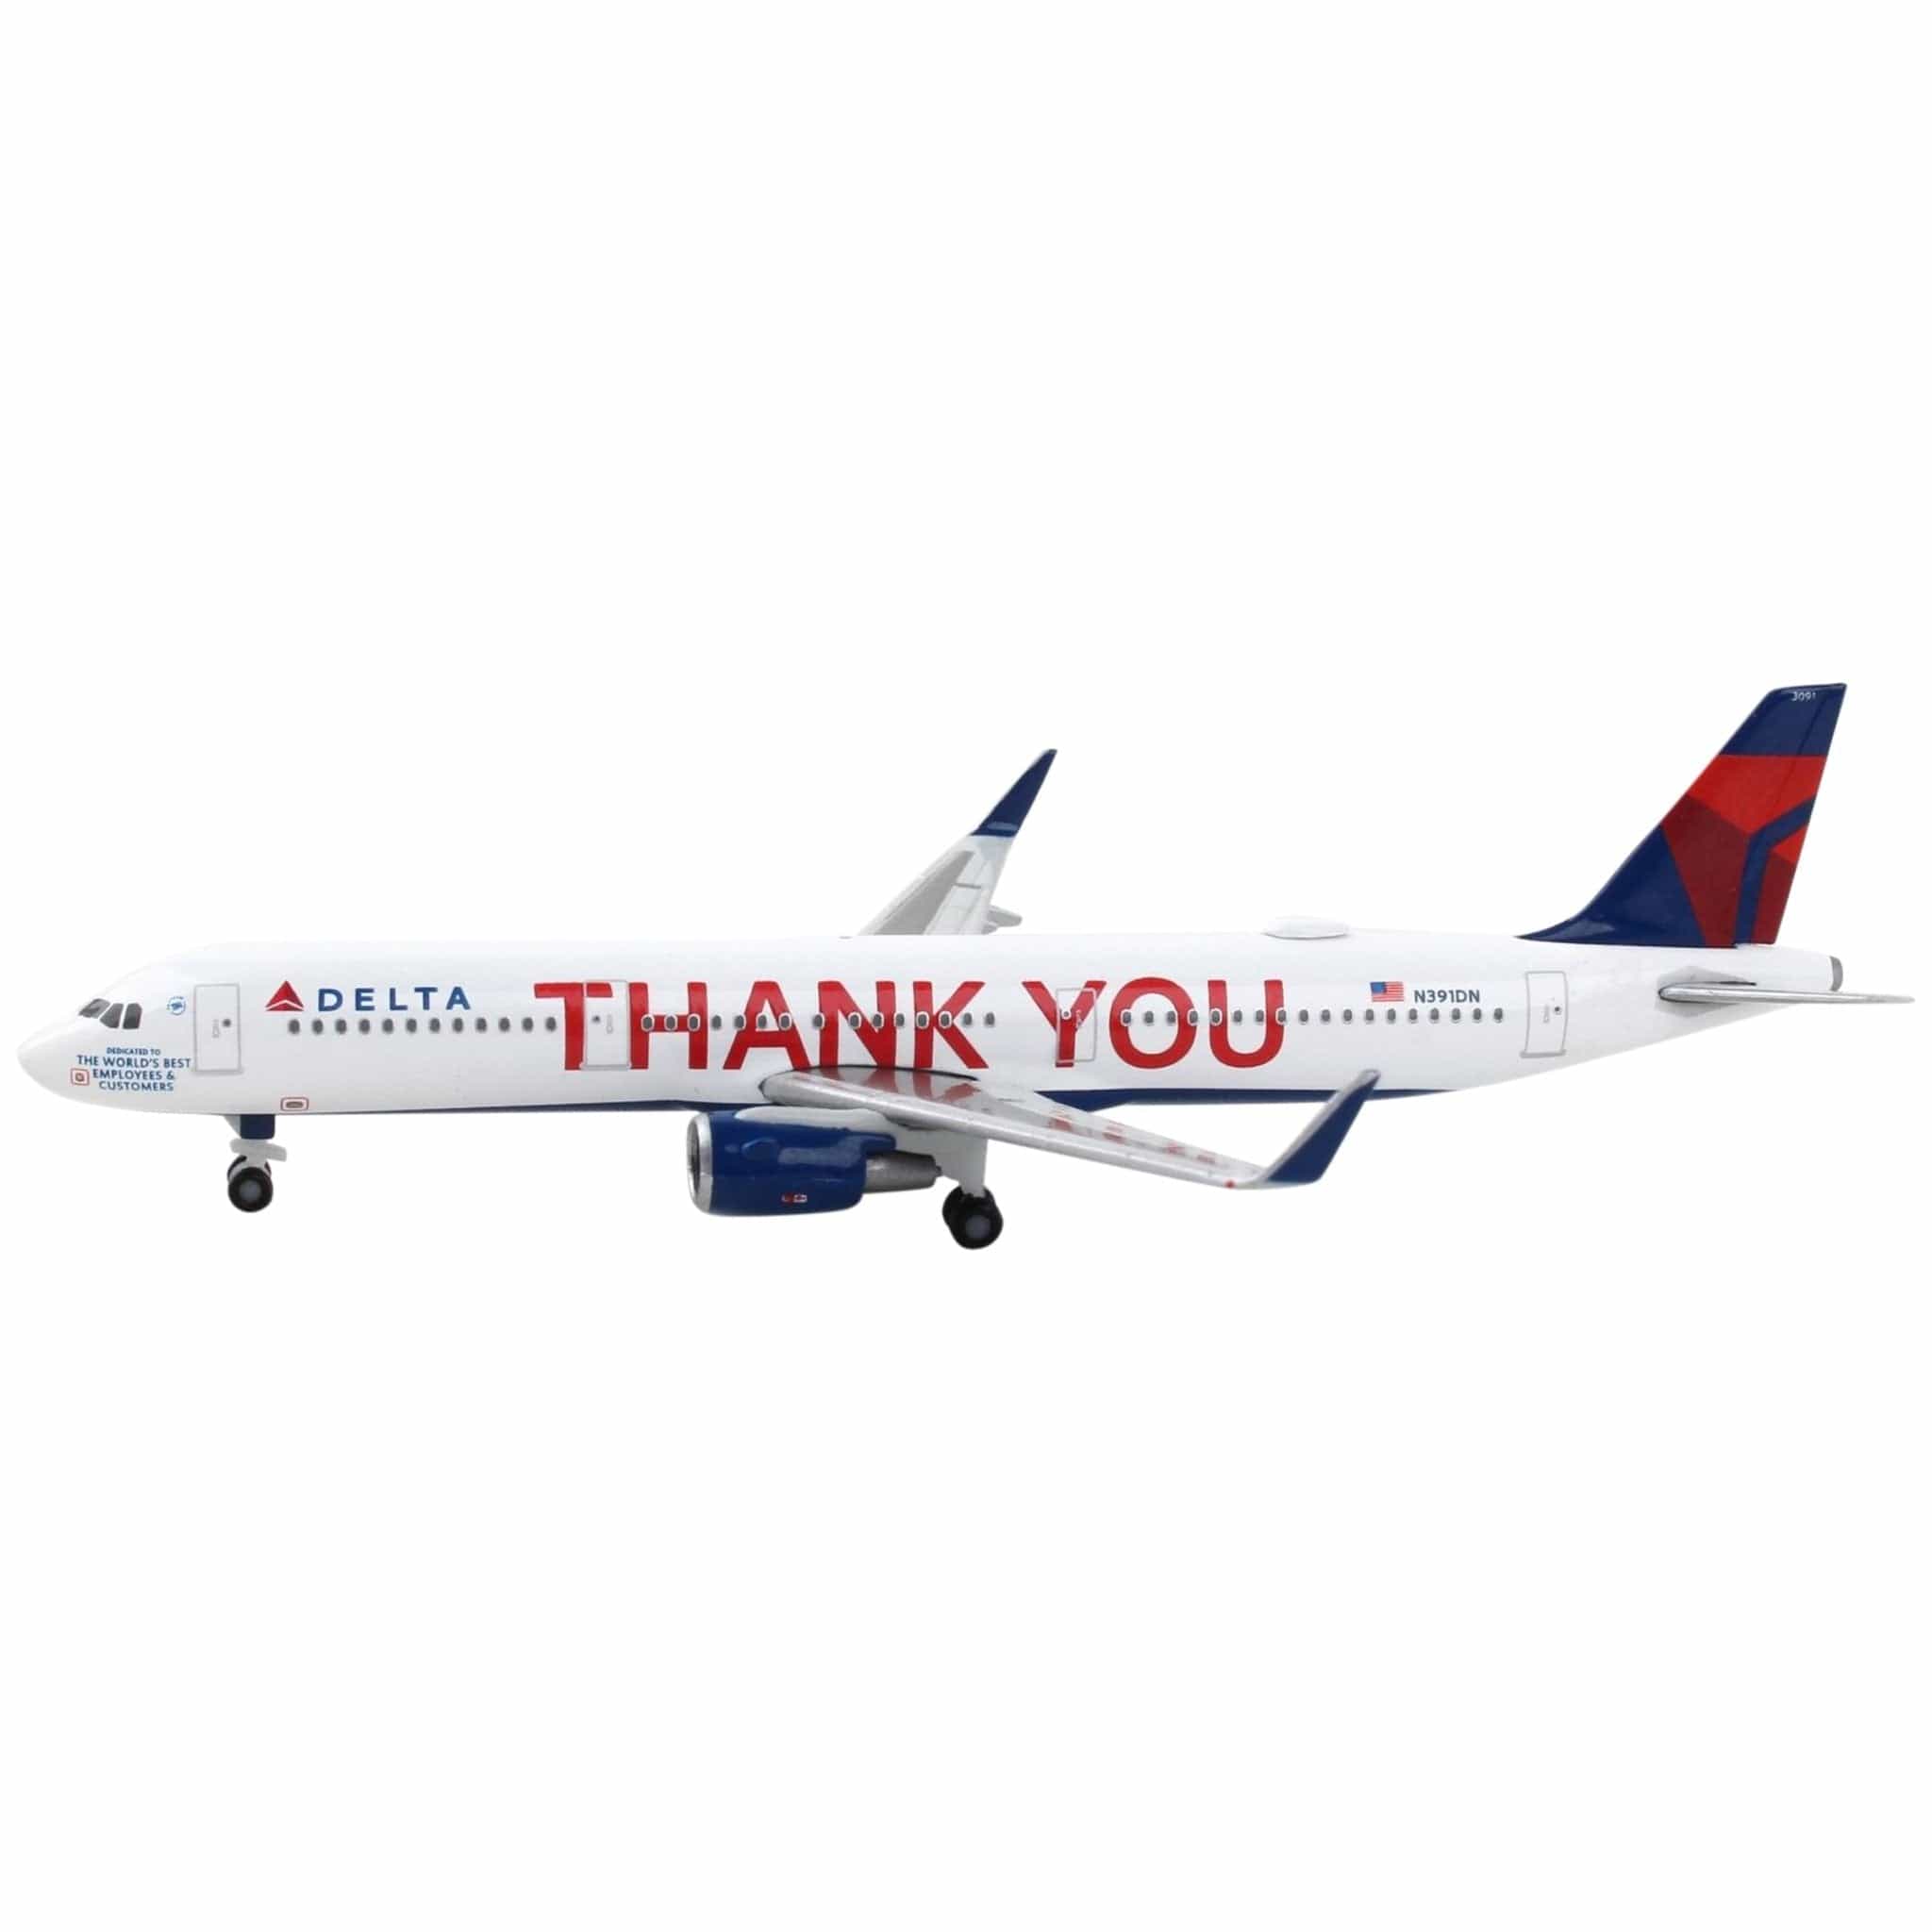 Herpa Delta A321 1/500 Thank You Die-Cast Metal Model Aircraft - PilotMall.com